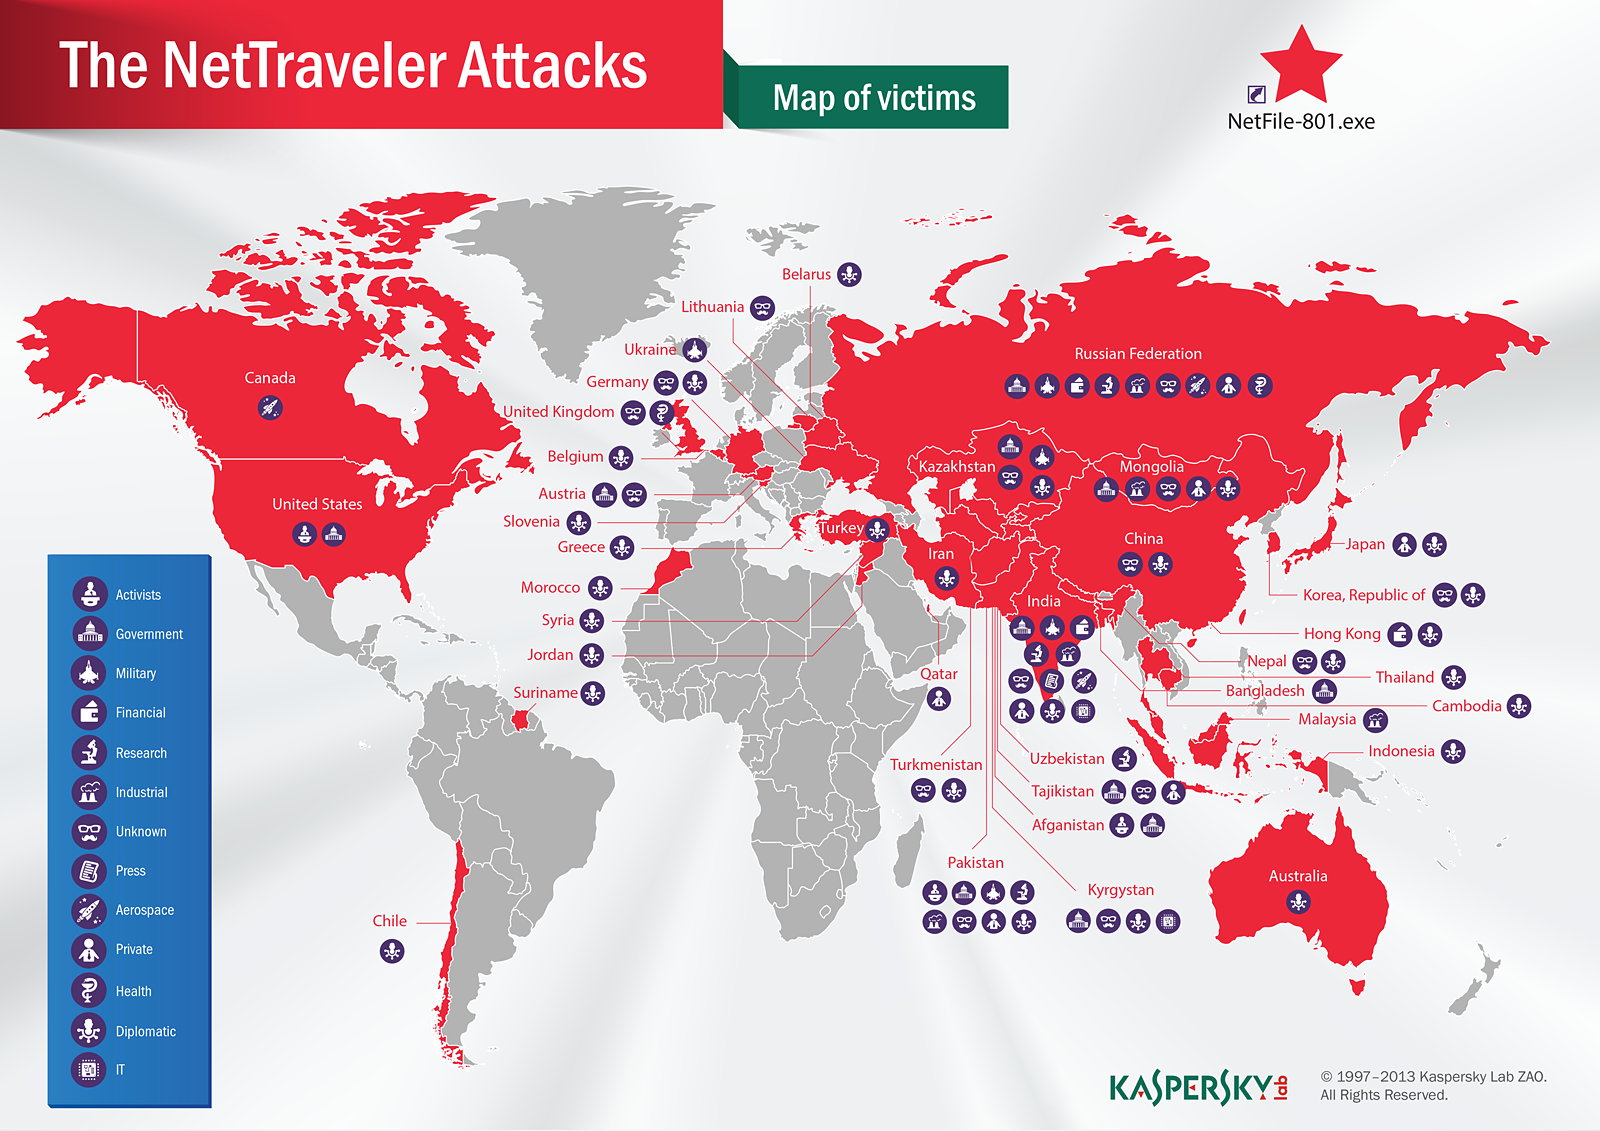 Лаборатория Касперского обнаружила глобальную сеть кибершпионажа, действующую в 40 странах мира